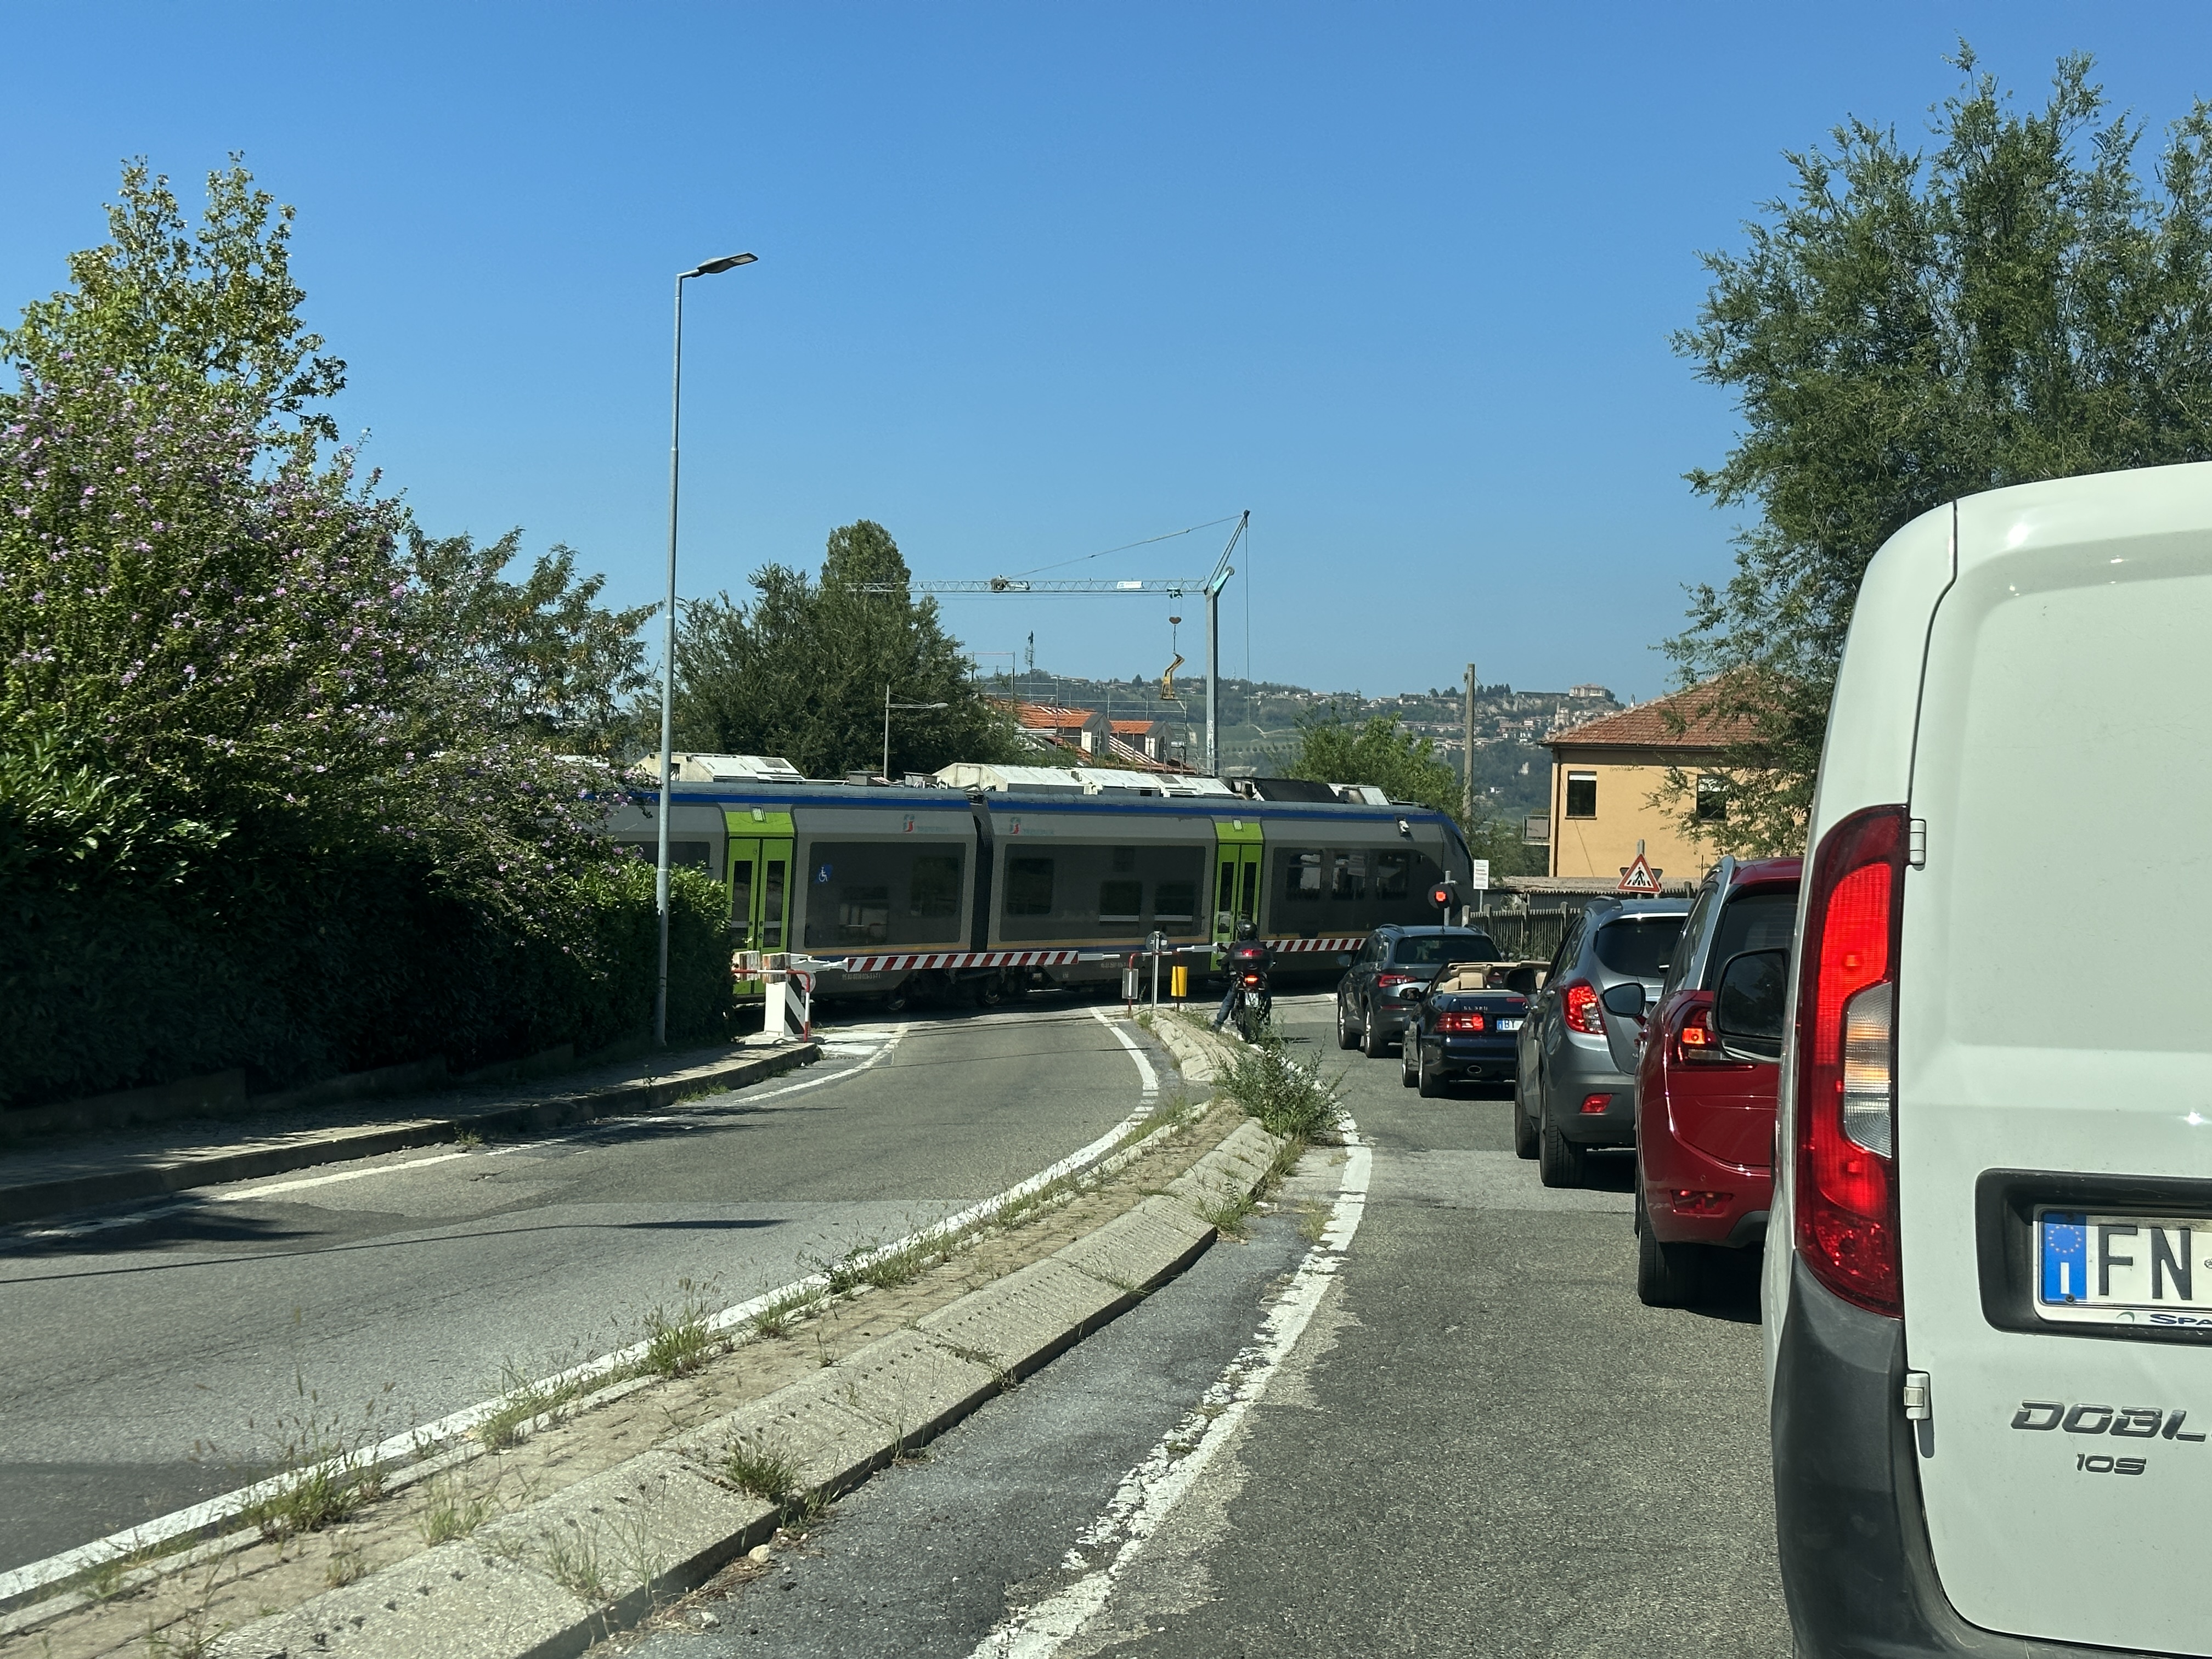 Dal 10 giugno chiude temporaneamente la tratta ferroviaria Alba-Asti per interventi di potenziamento infrastrutturale